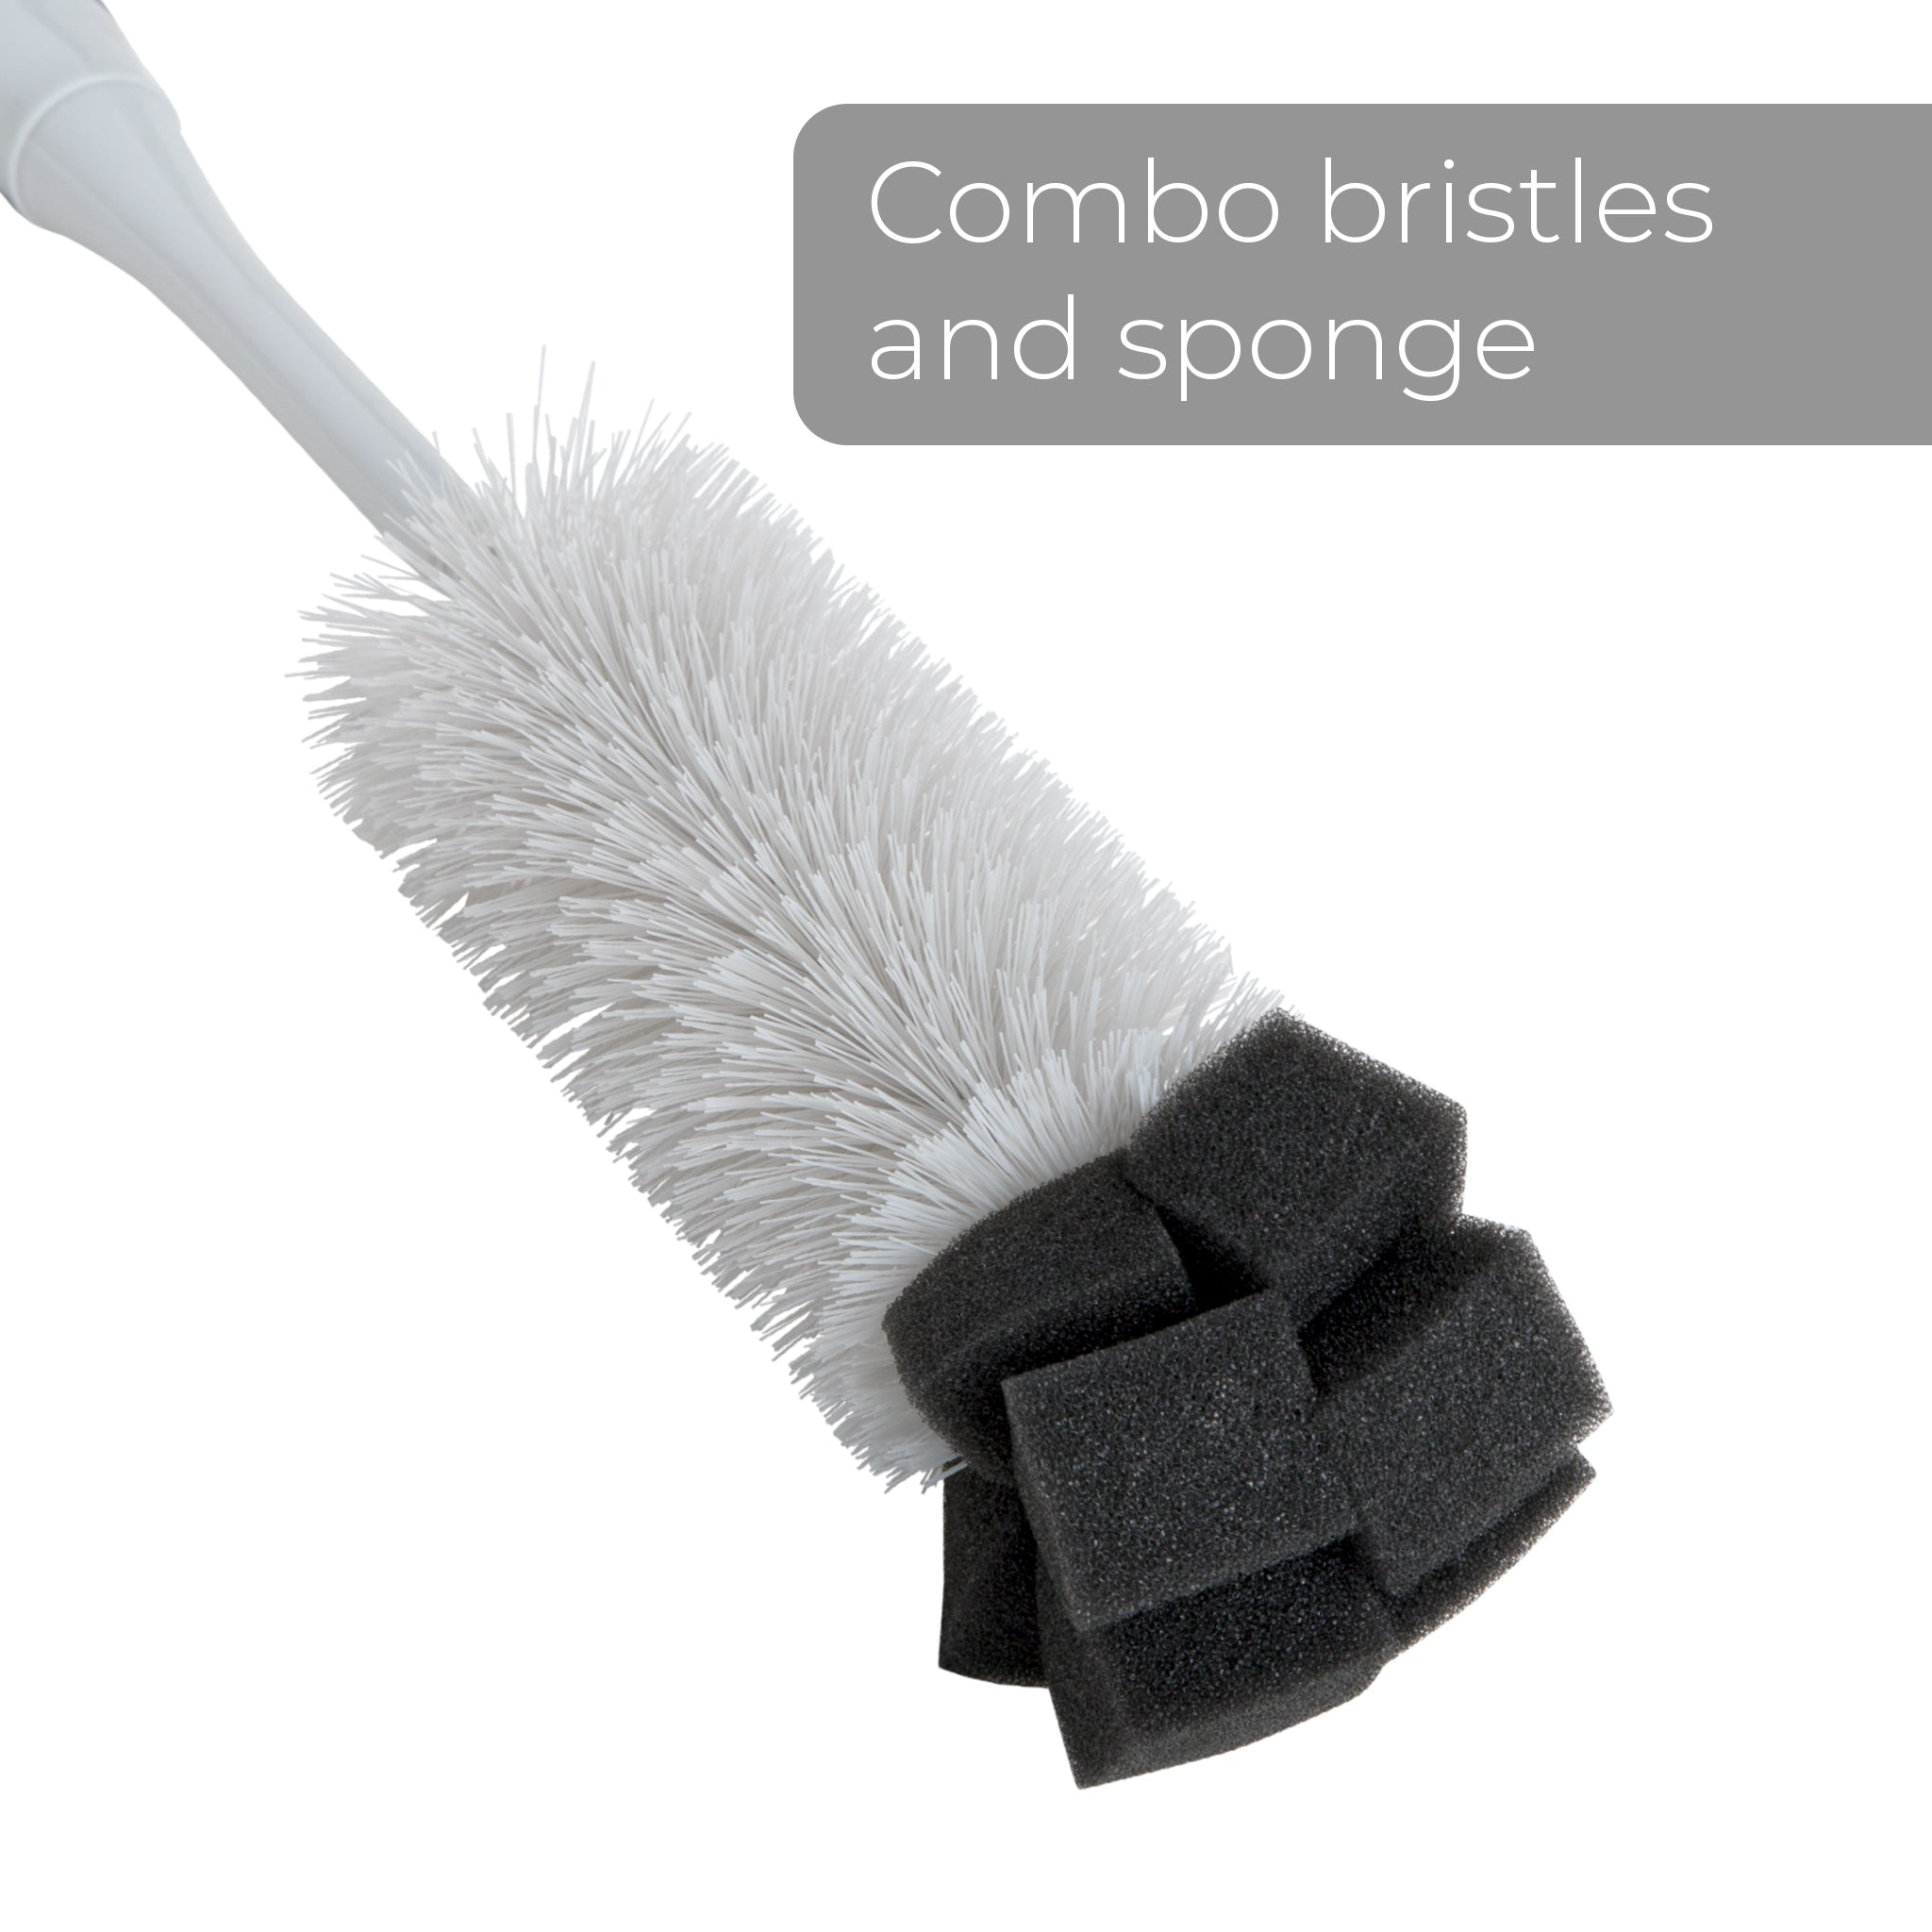 https://www.shopsmartdesign.com/cdn/shop/products/bottle-brush-with-sponge-end-14-inch-smart-design-cleaning-7001541-incrementing-number-964366.jpg?v=1679345025